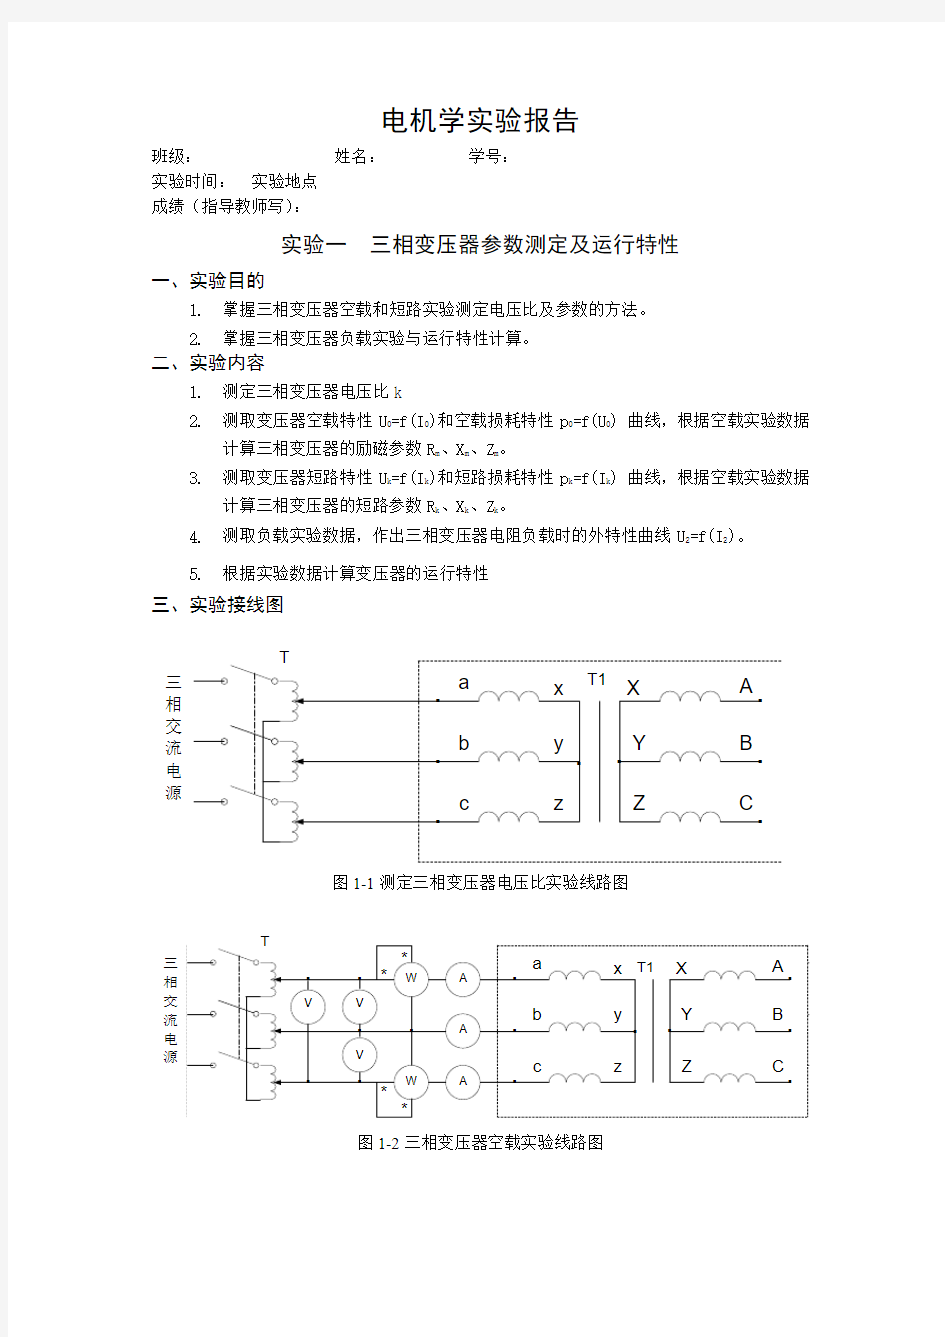 上海交大电机学实验+三相变压器参数测定及运行特性